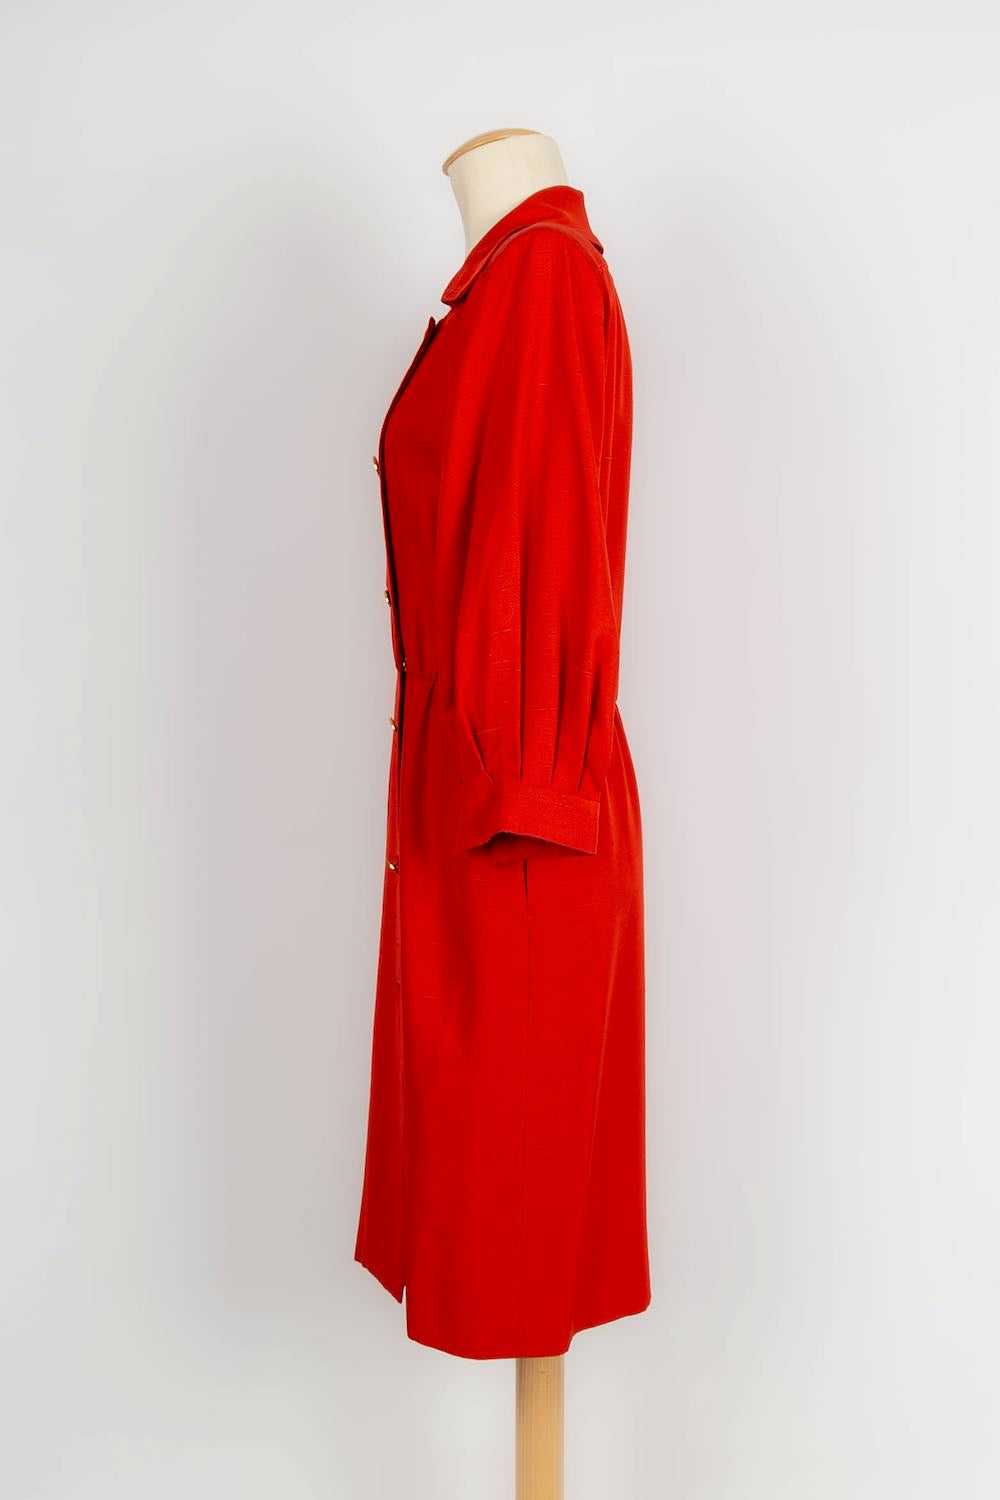 Yves Saint Laurent Haute Couture Dress - image 4